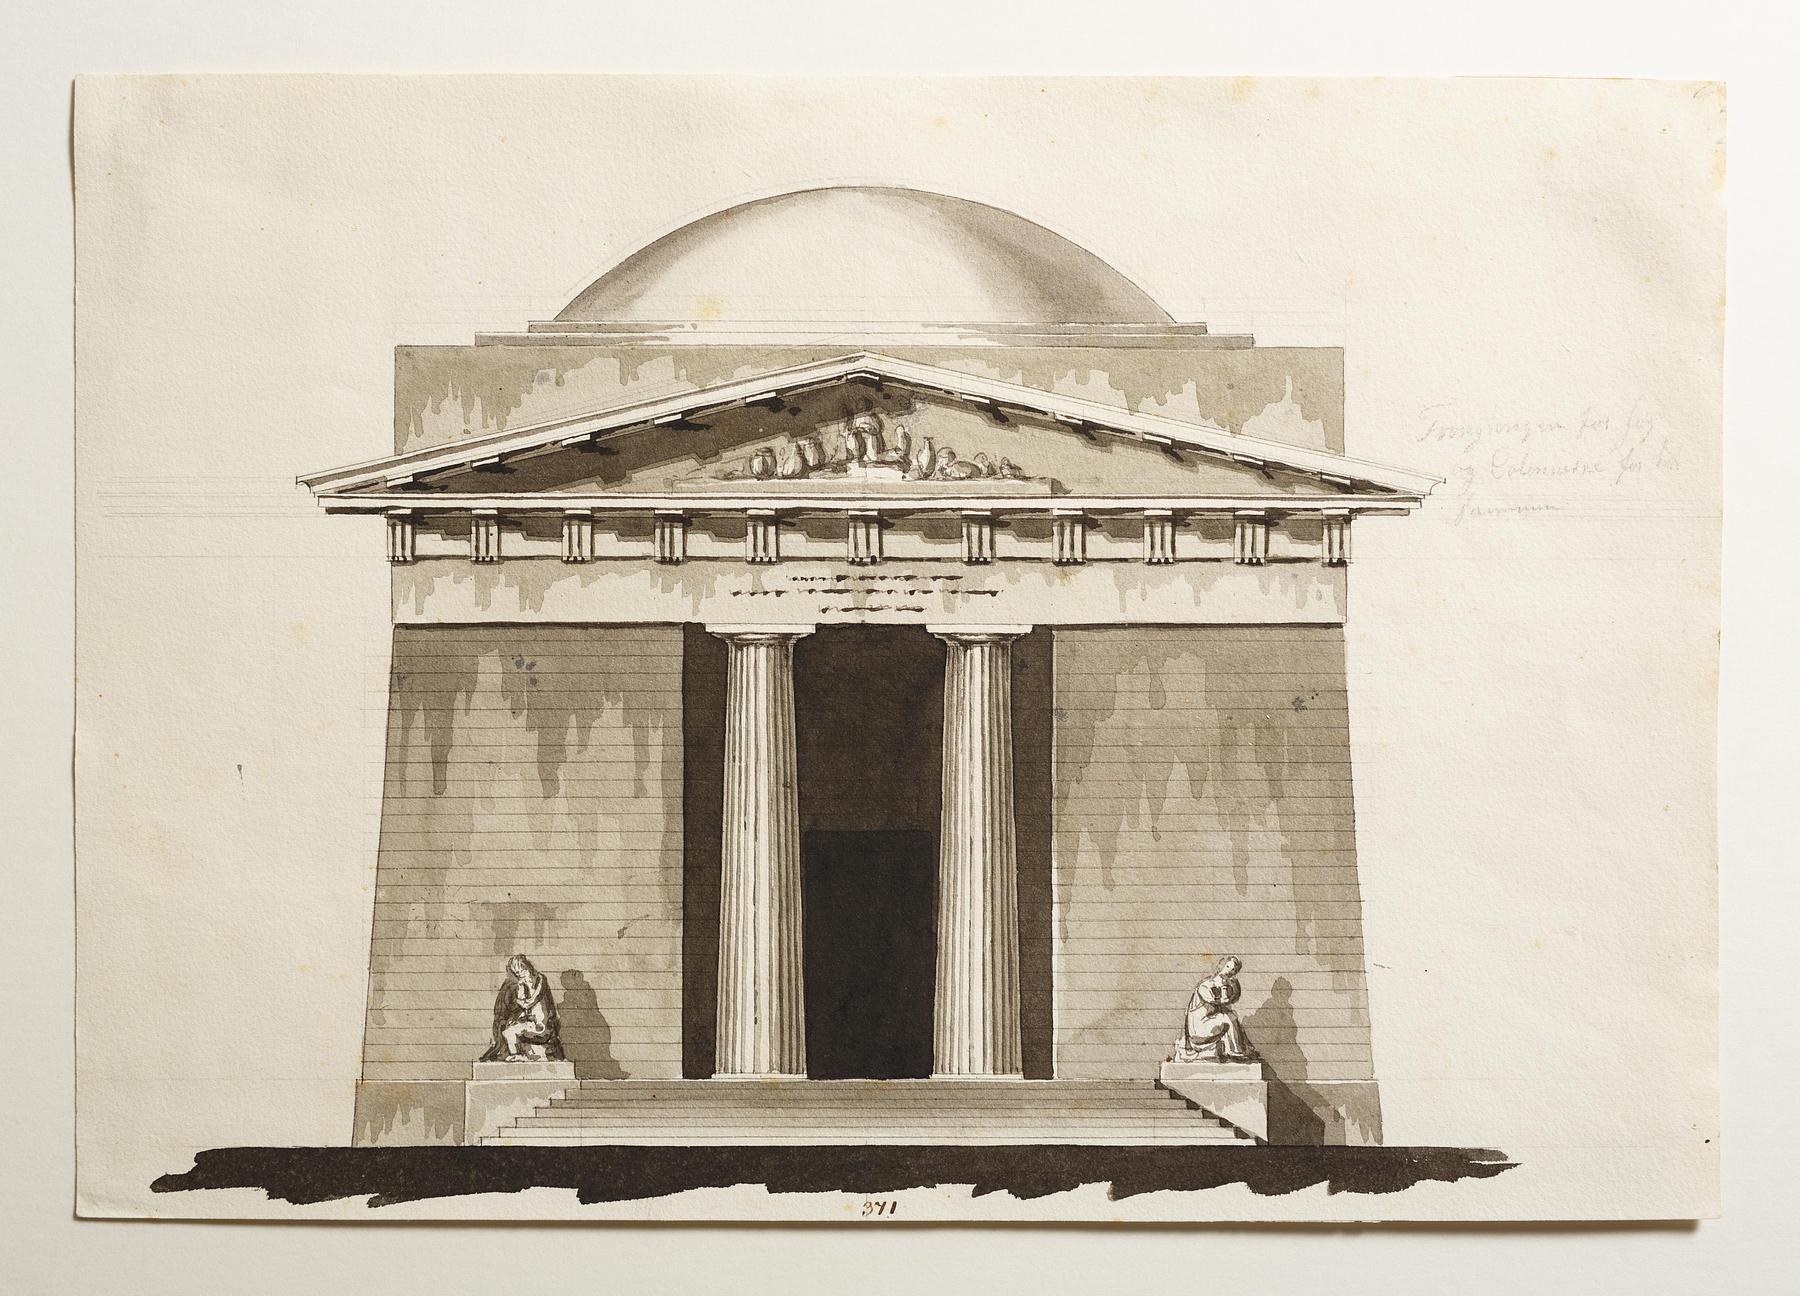 Udkast til et mausoleum eller gravkapel i antik stil, opstalt af facade, D859